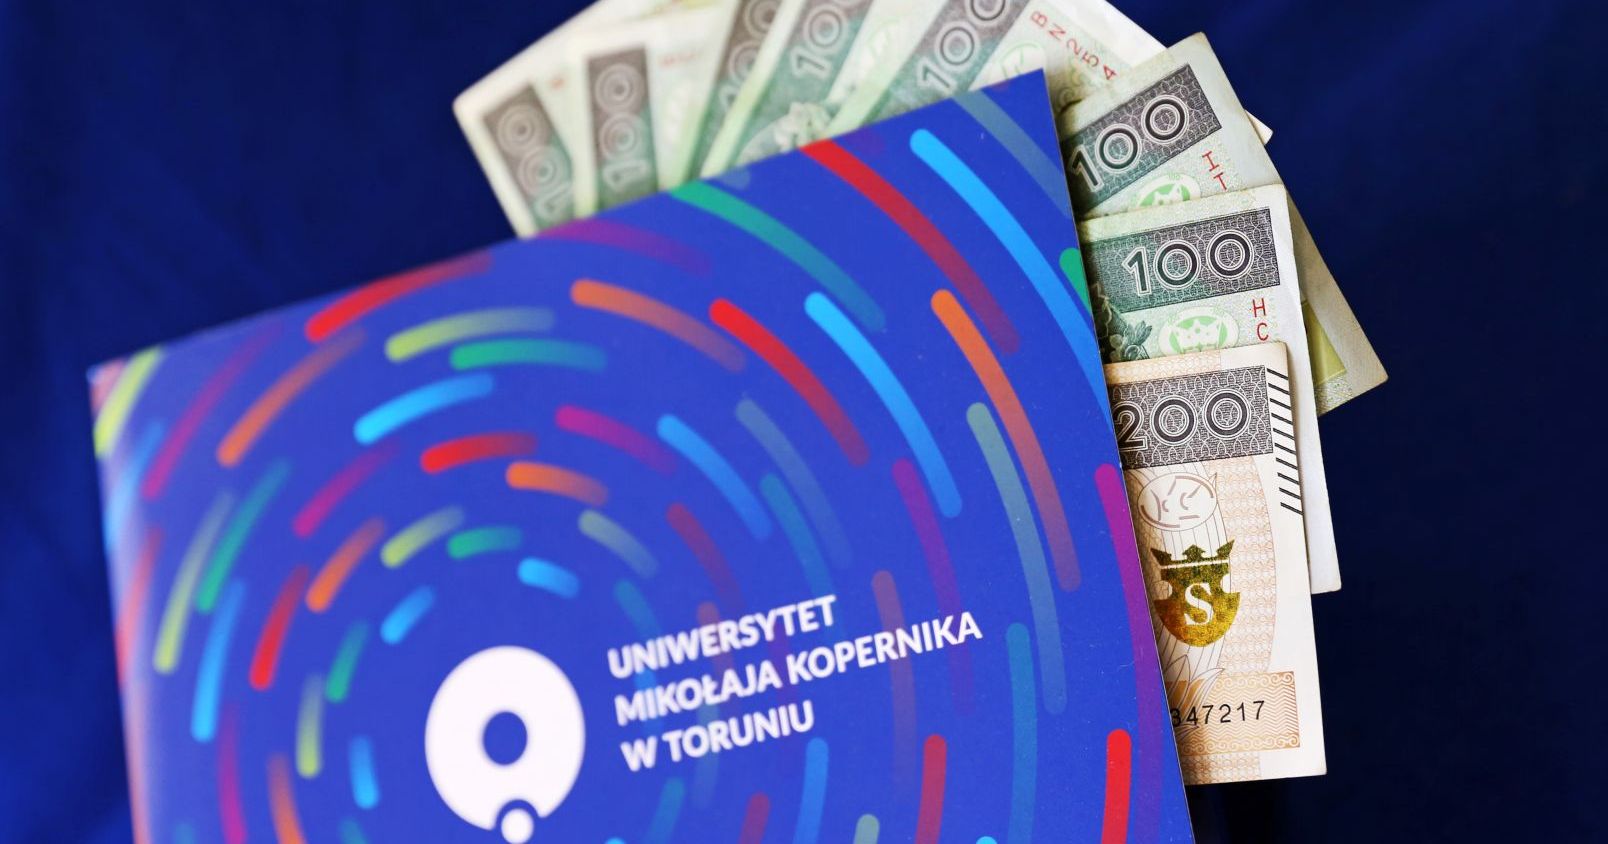  Papierowe banknoty w niebieskiej teczce z logo UMK